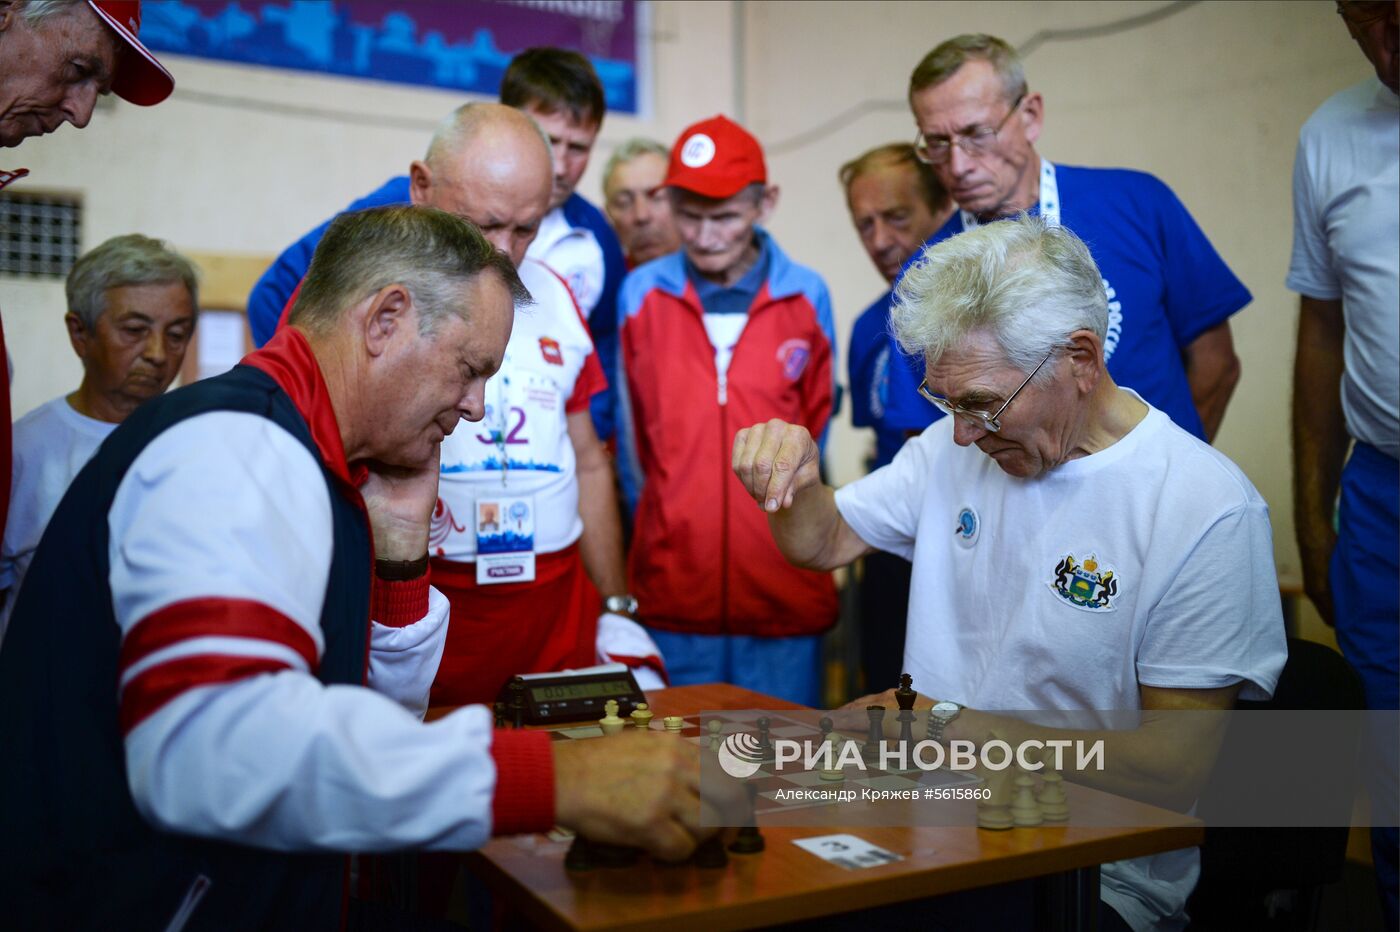 V Всероссийская спартакиада пенсионеров в Новосибирске